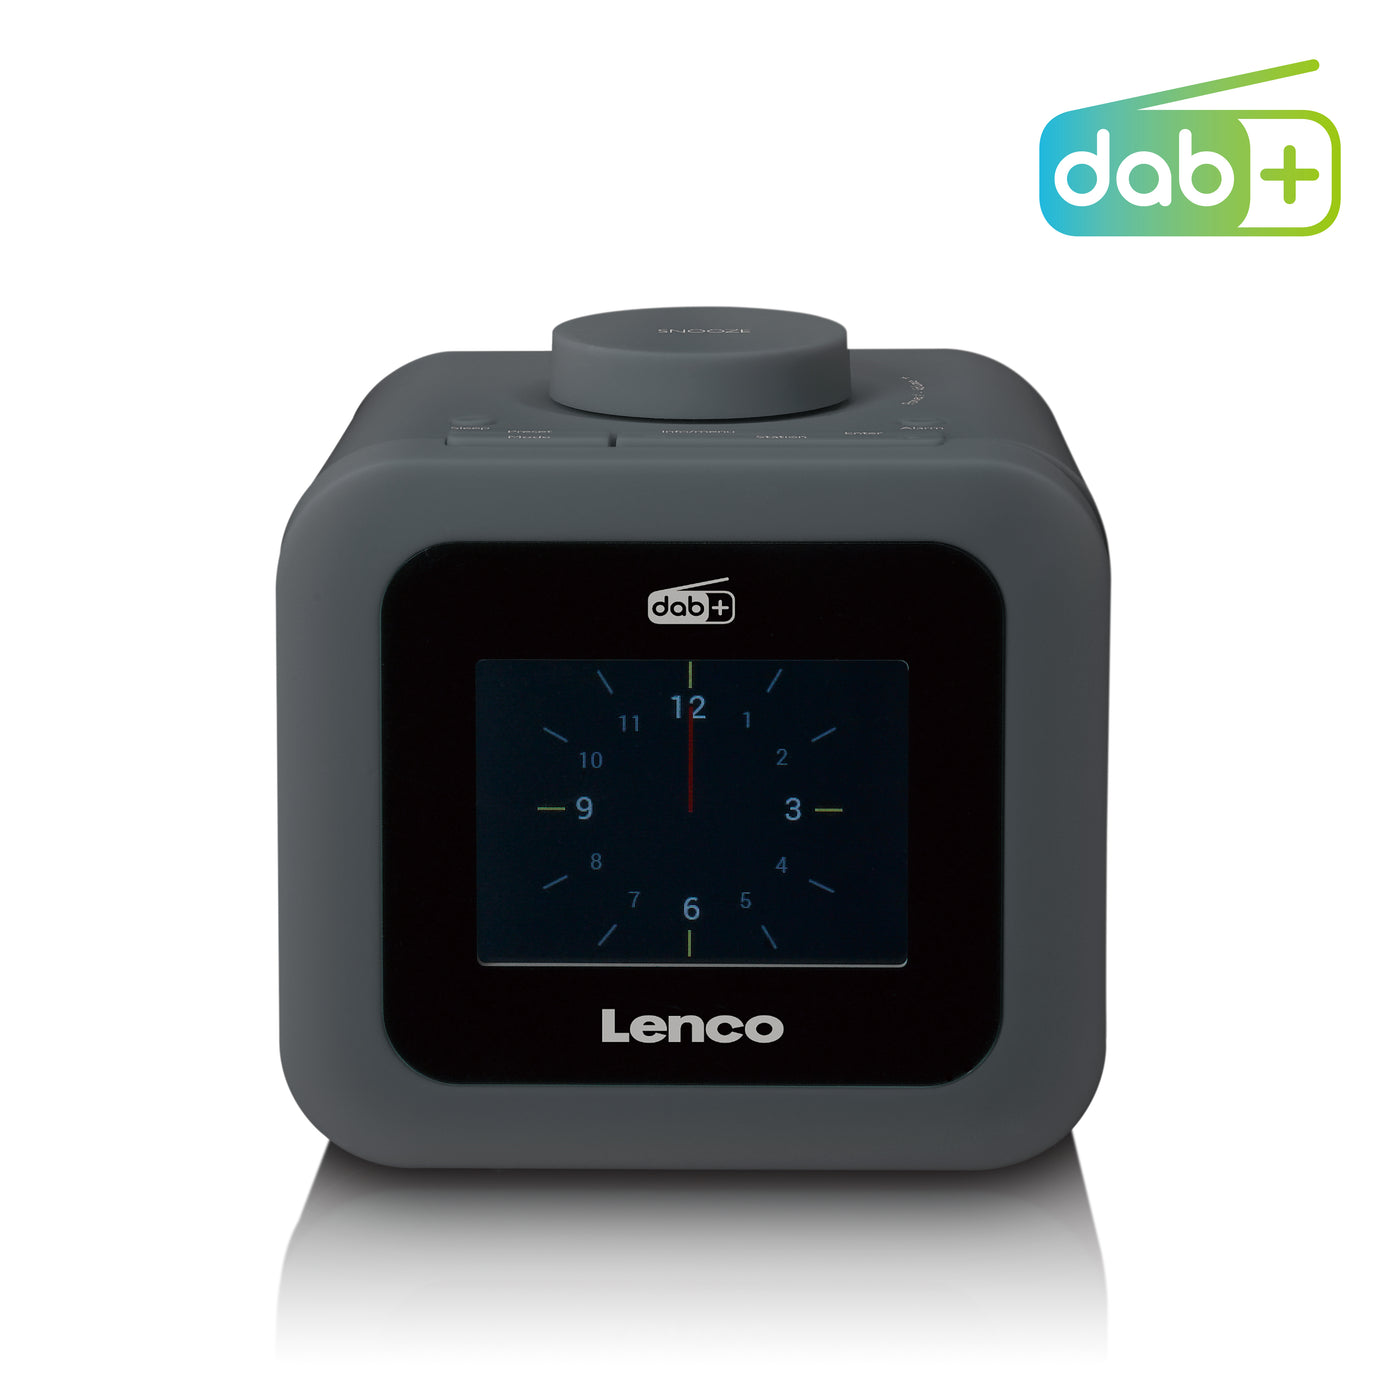 Lenco CR-620GY - Radio-réveil DAB+/FM avec écran couleur - Gris